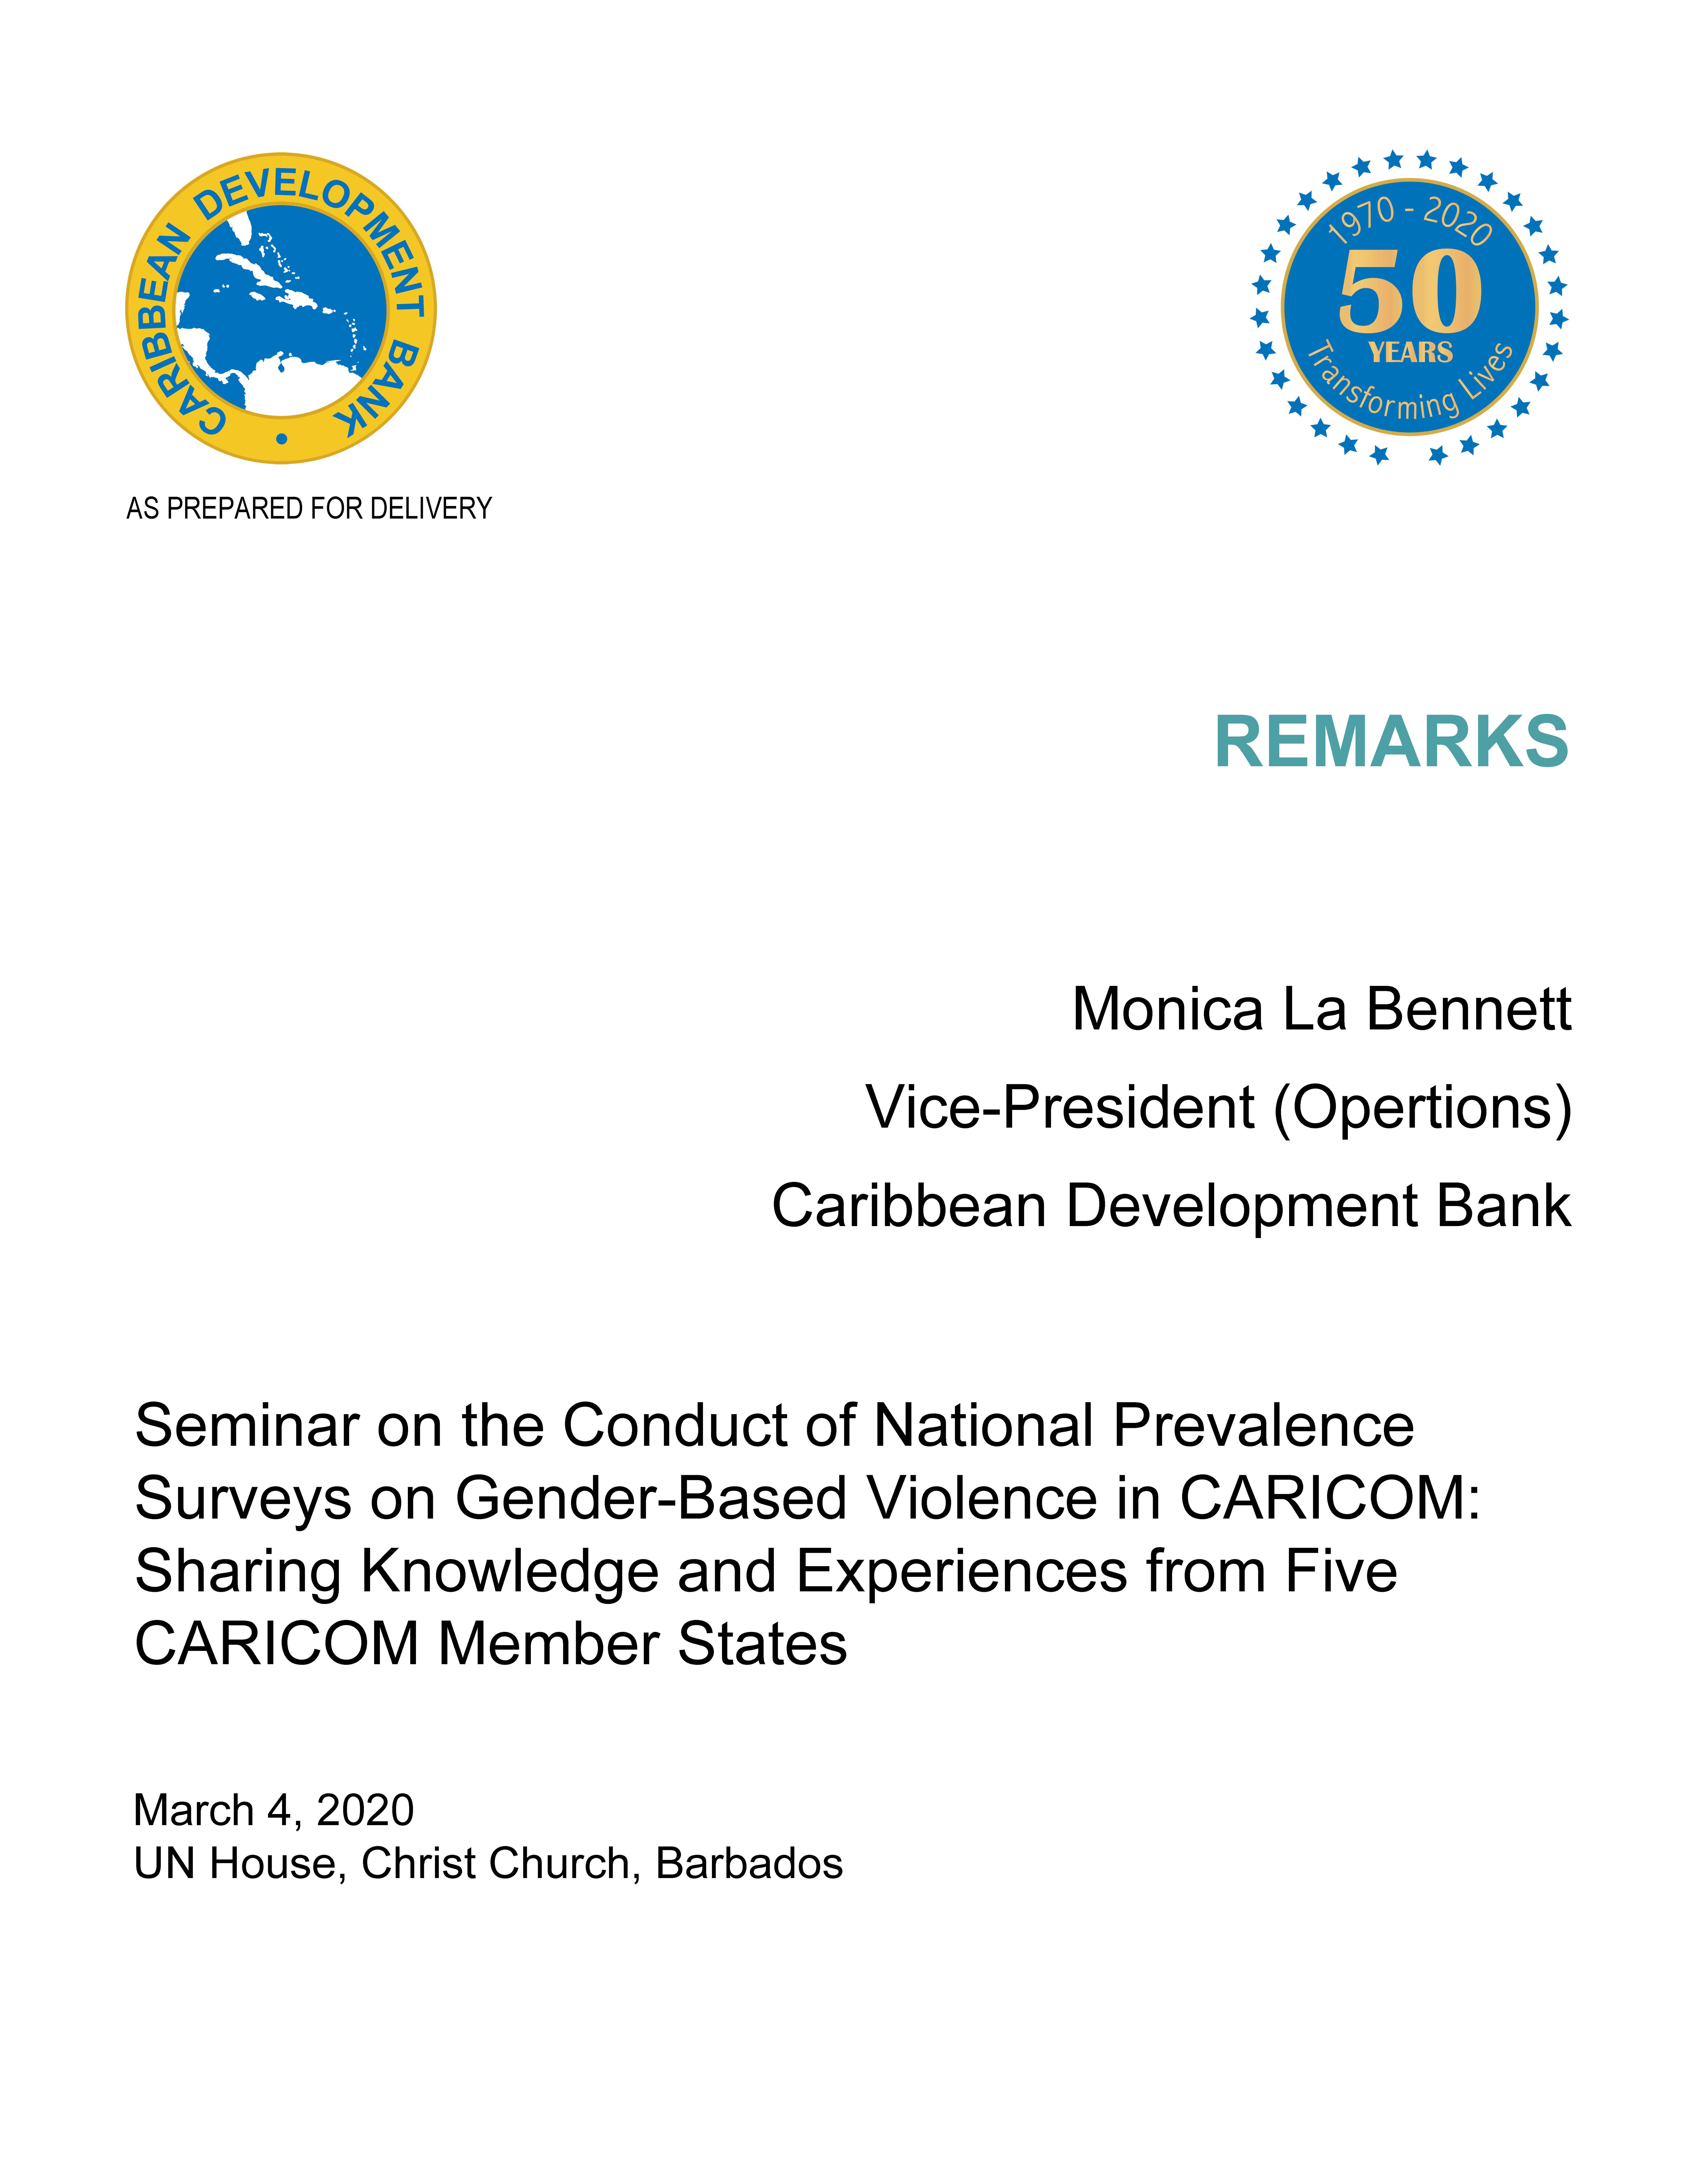 Launch of National Gender-based Violence Surveys | Caribbean ...